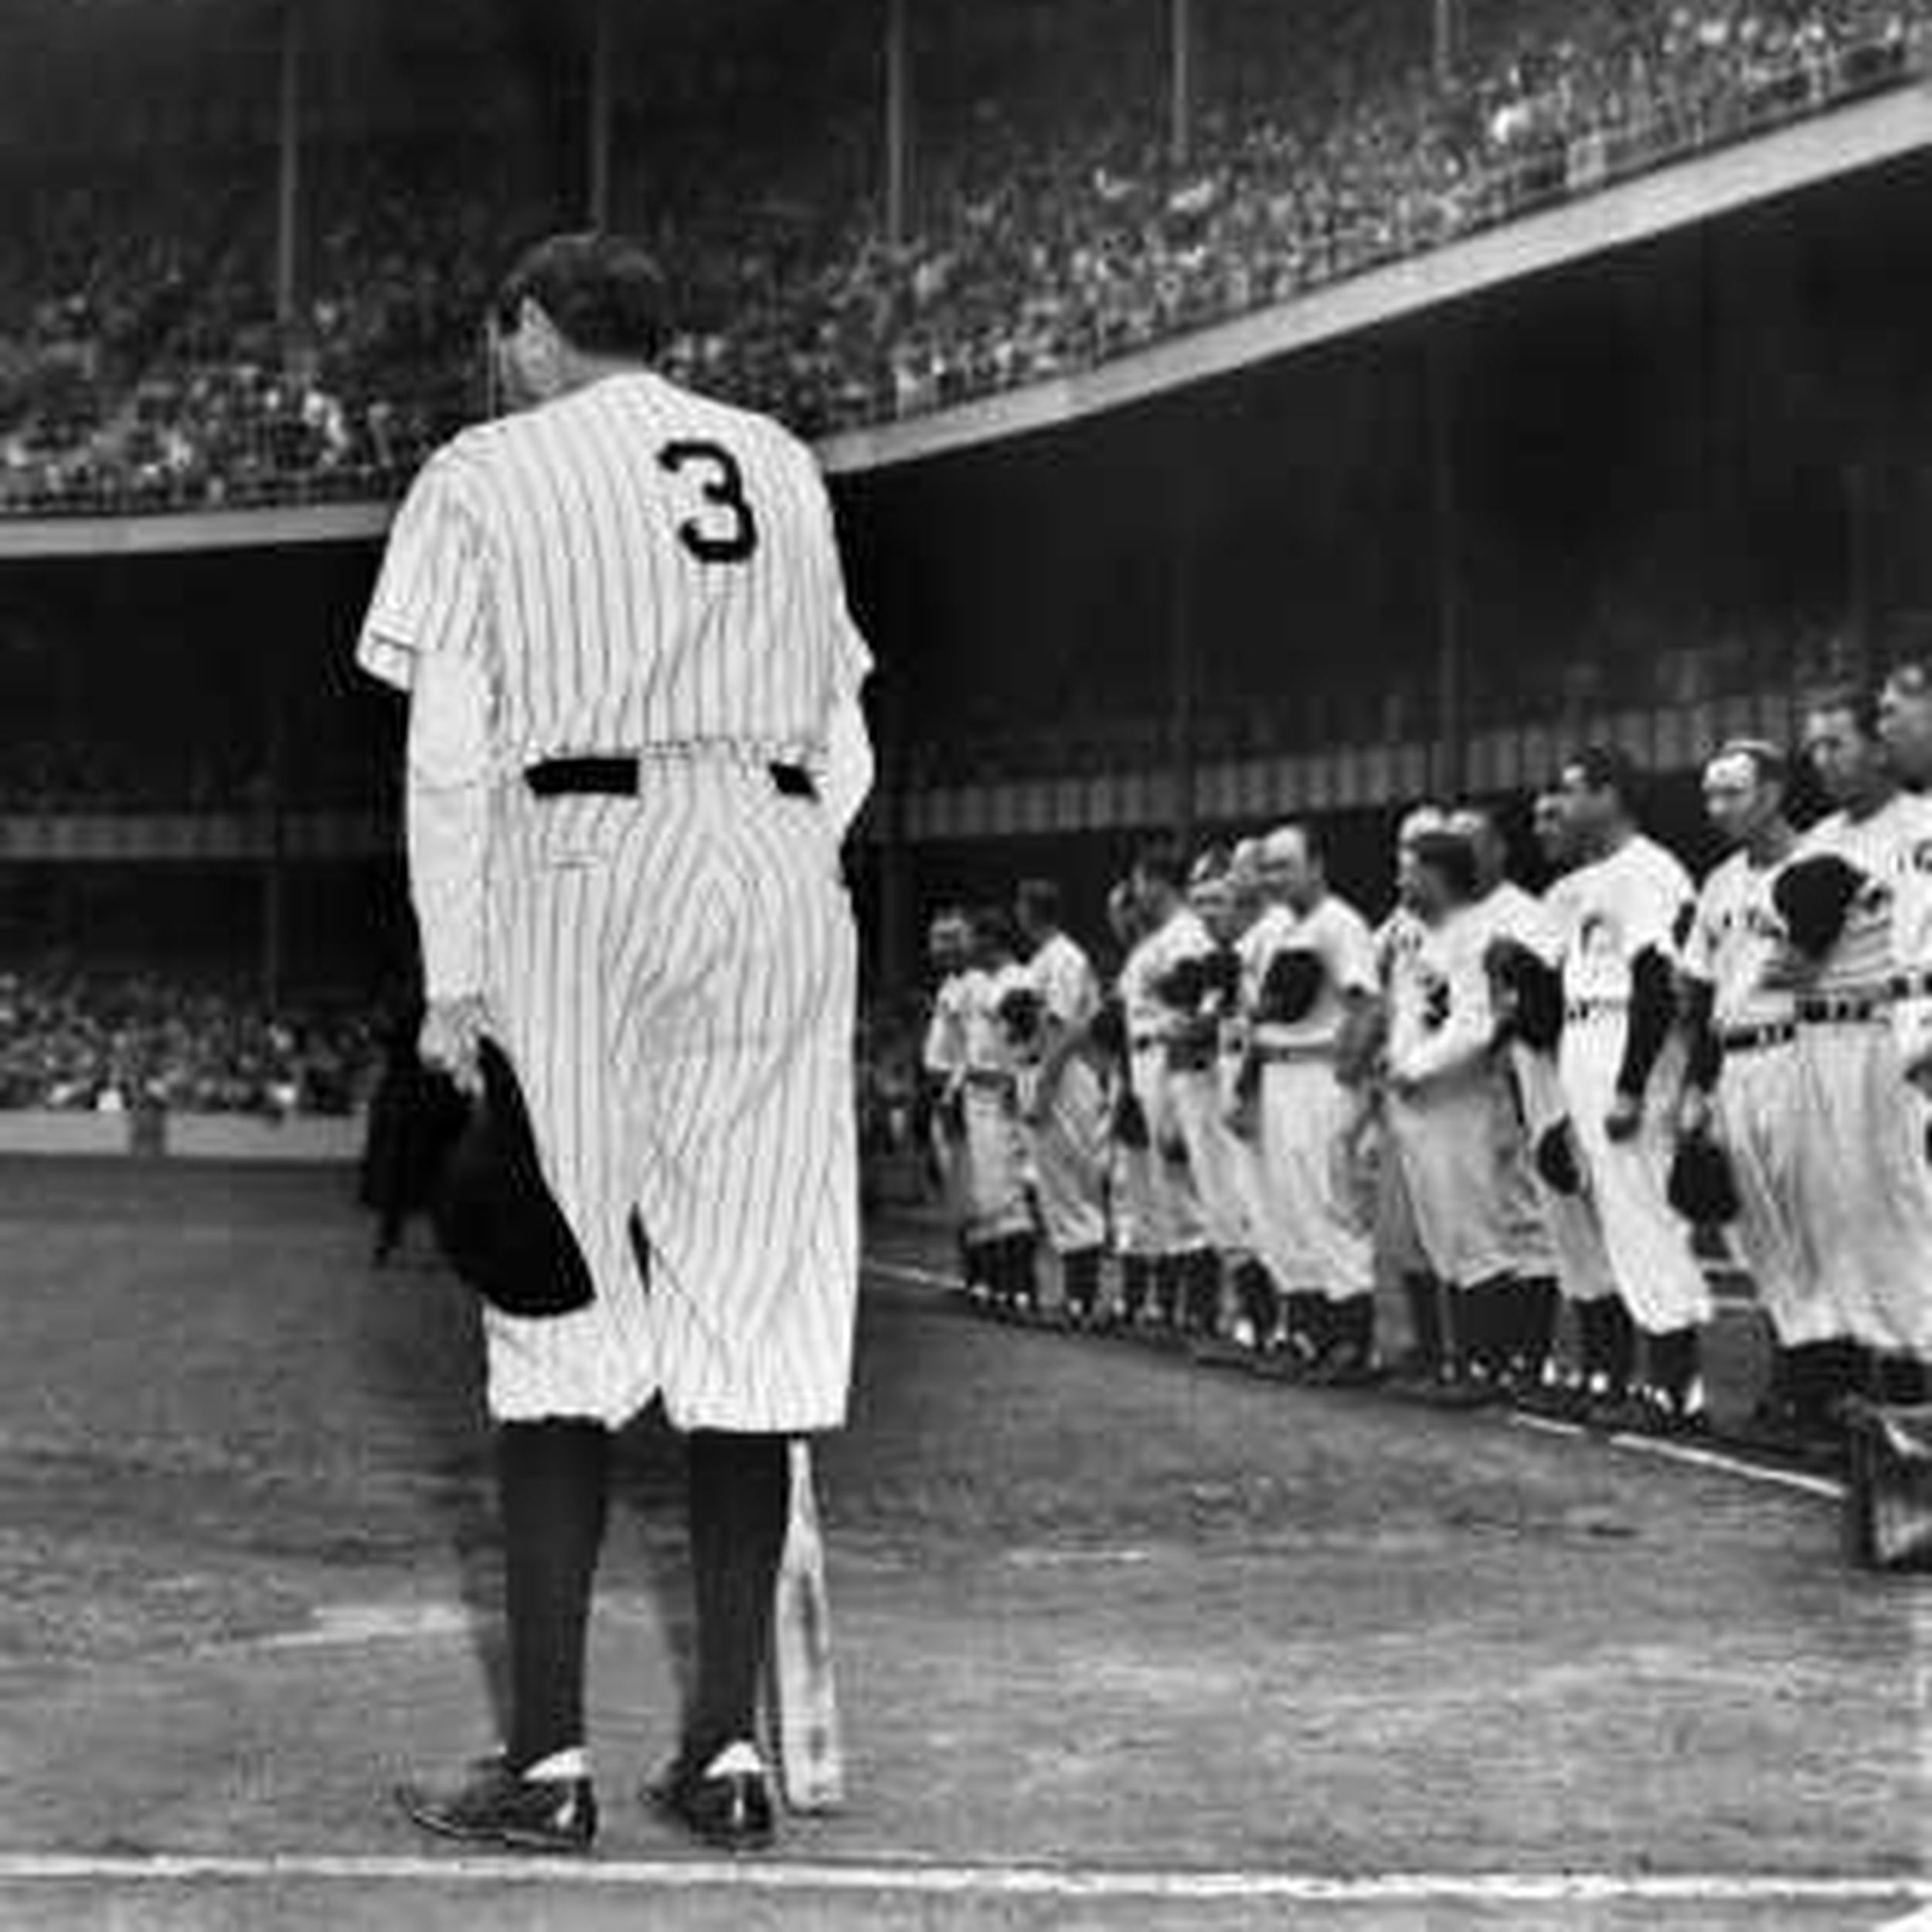 Babe Ruth's Three-Run Homer Opening Day at the New Yankee Stadium